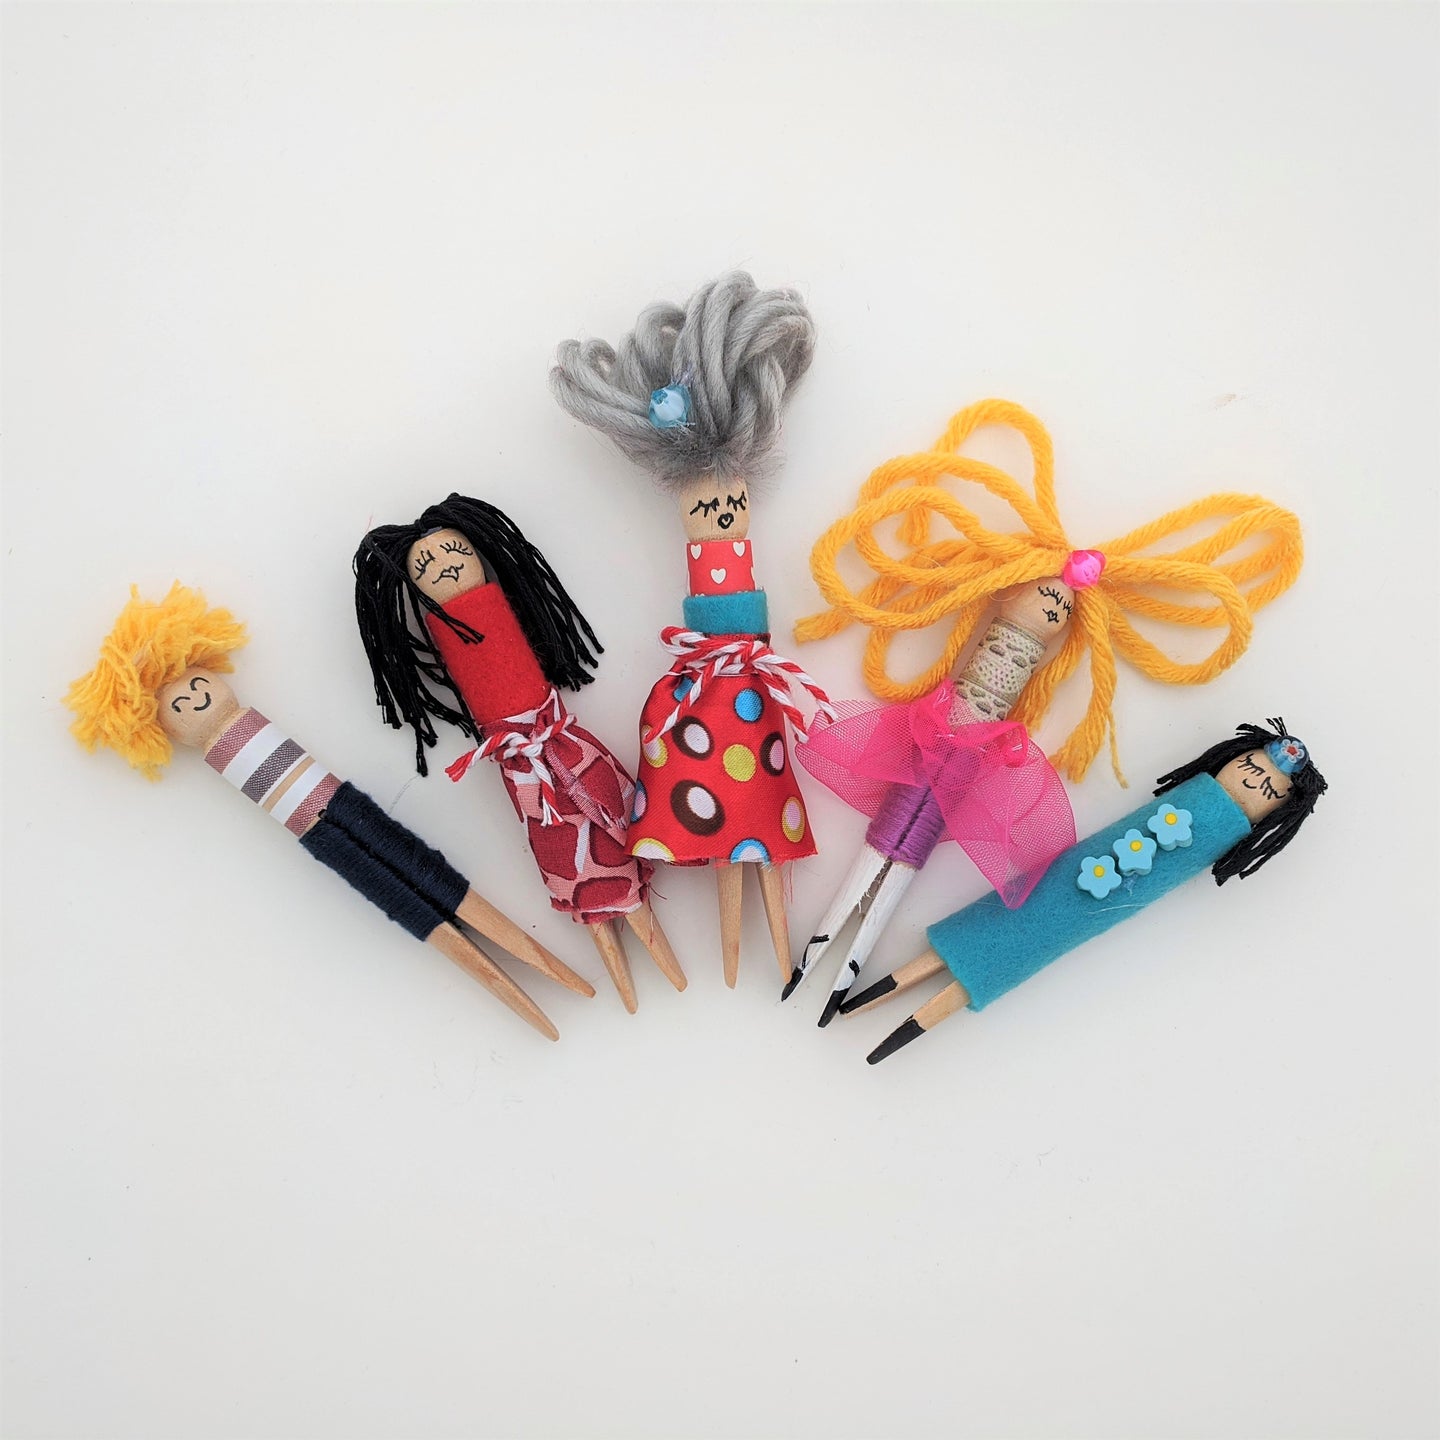 Kids craft kit, make your own wooden peg dolls, makes five peg dolls